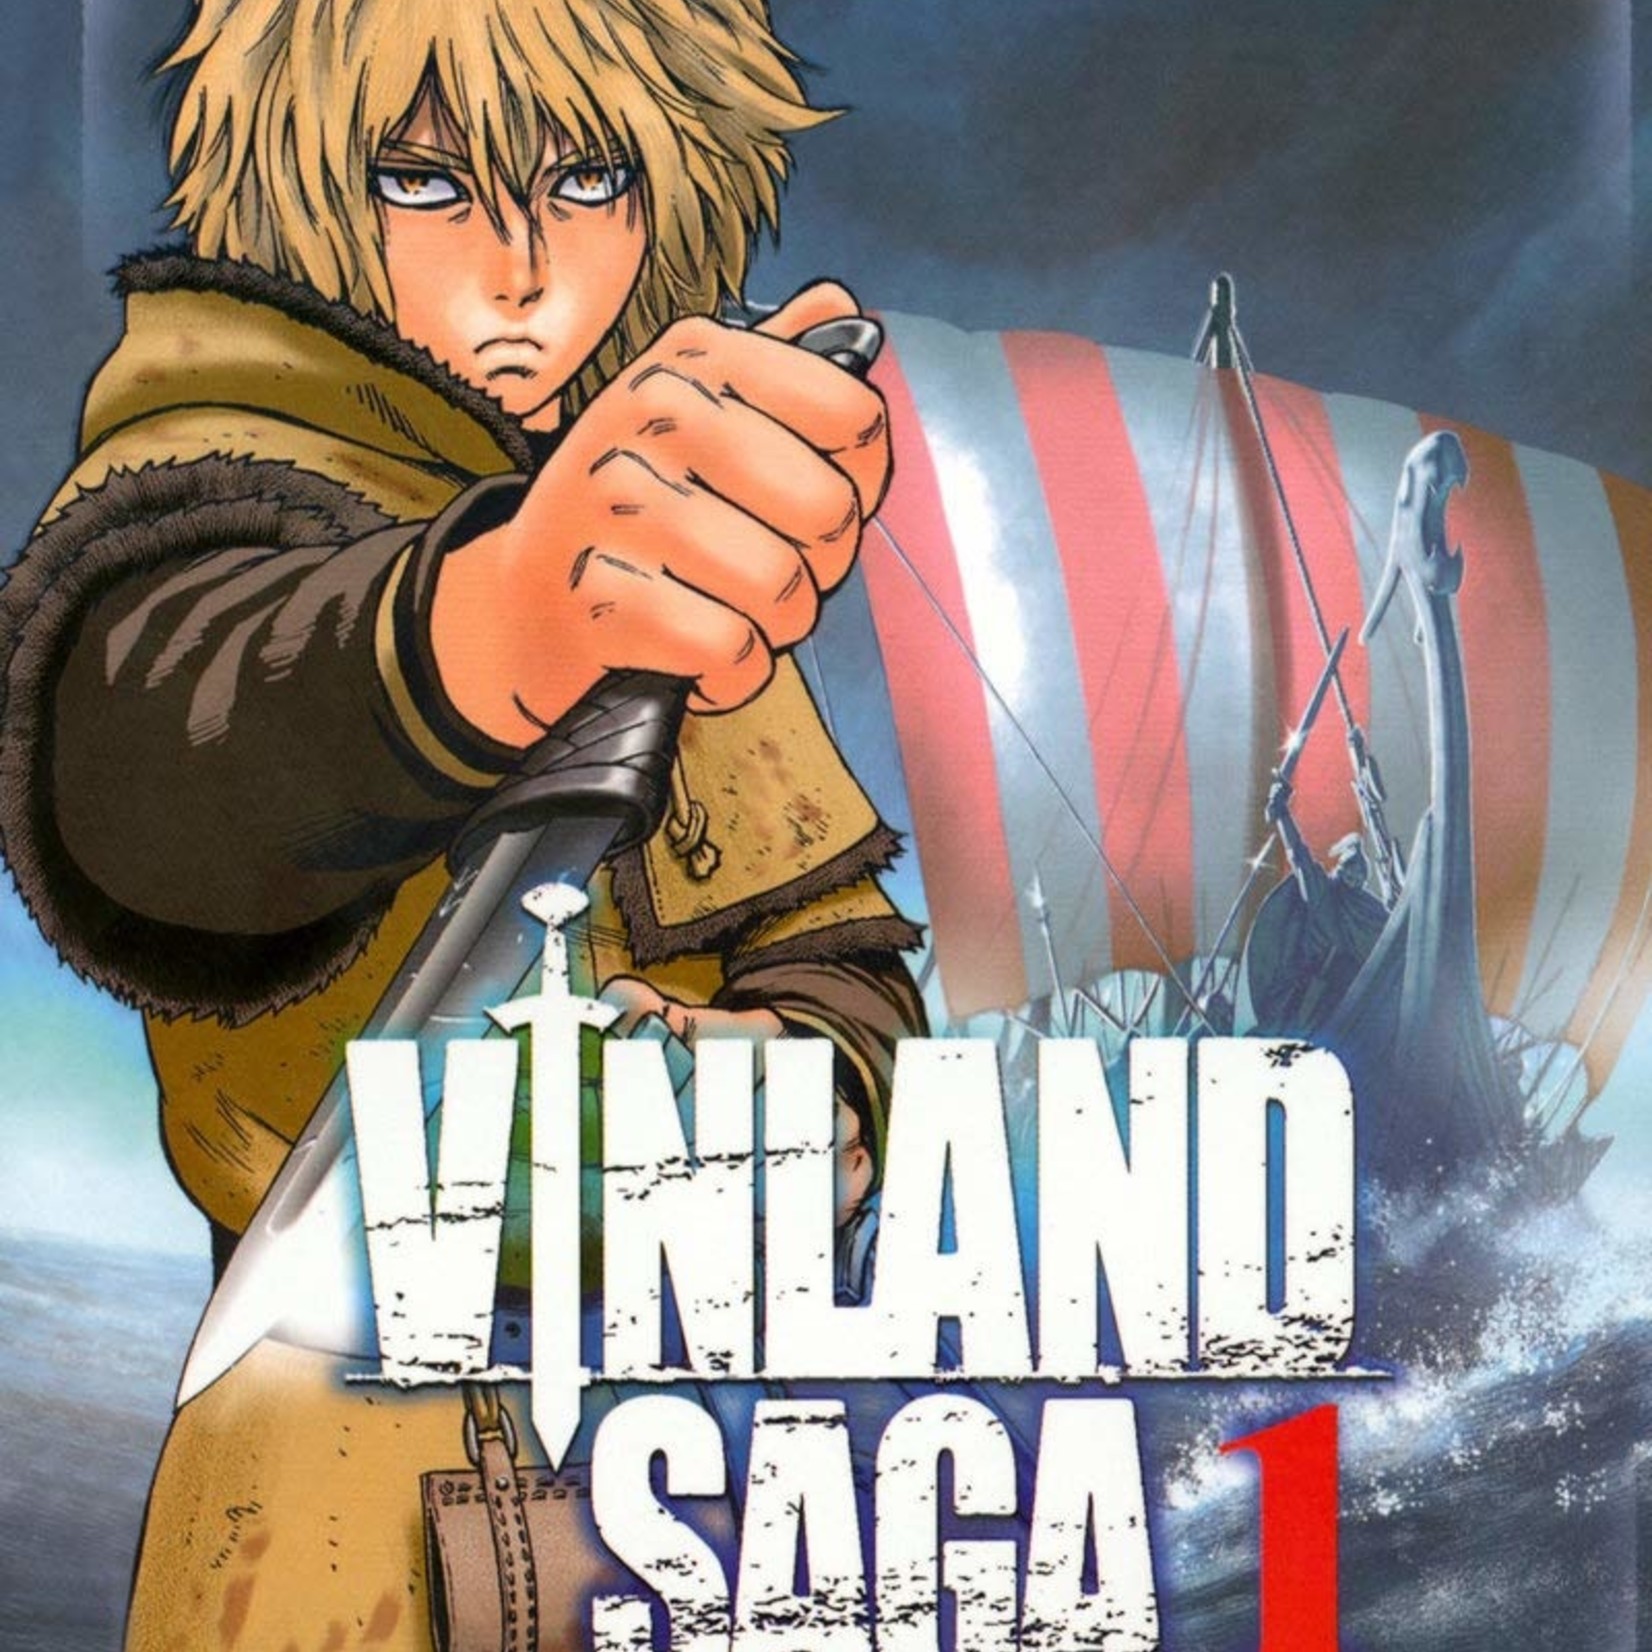 Kurokawa *****Manga - Vinland Saga Tome 01